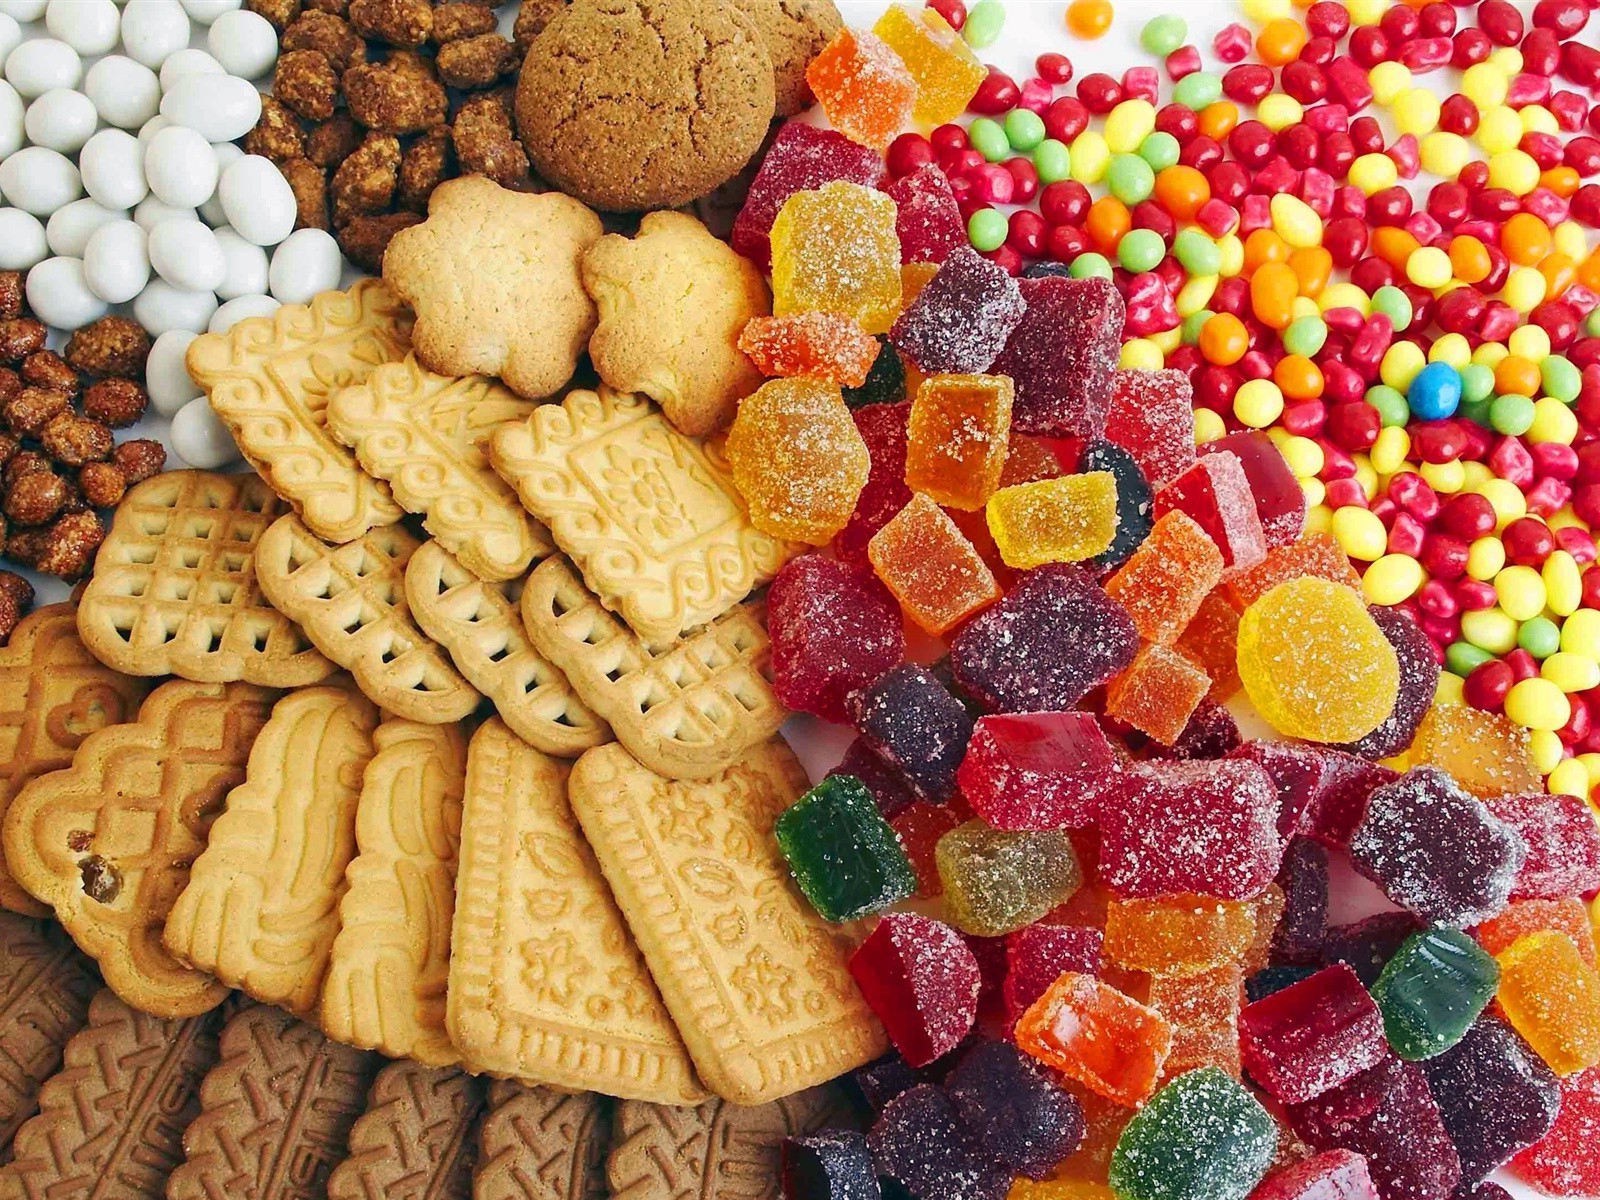 печенье еда конфеты сахар рабочего стола кондитерское изделие сладкий вкусные освежение партия цвет крупным планом микс вкусные фрукты многие здоровый вид питание